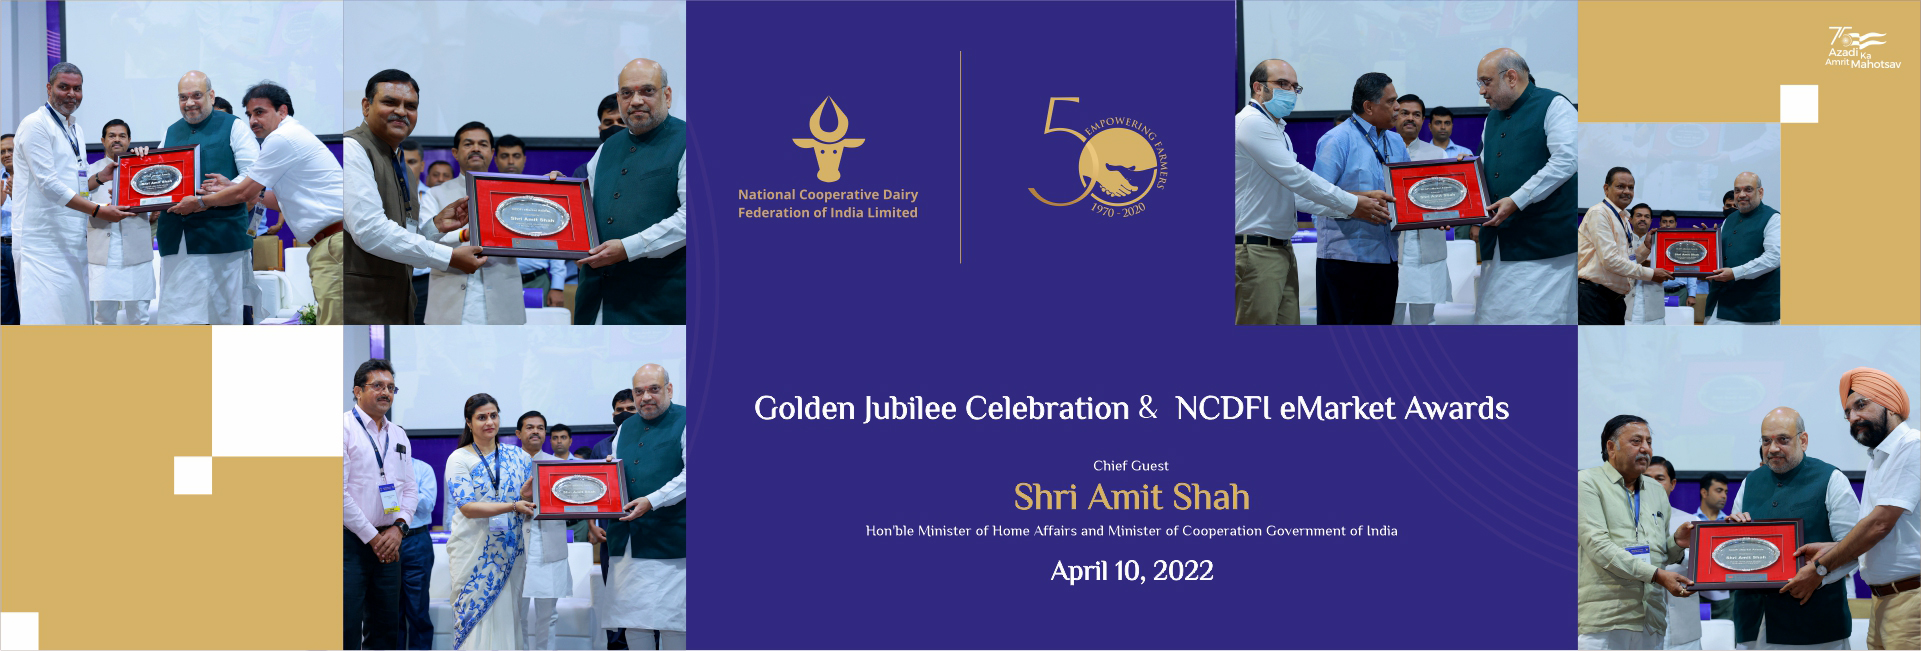 NCDFI Golden Jubilee Celebration & eMarket Awards